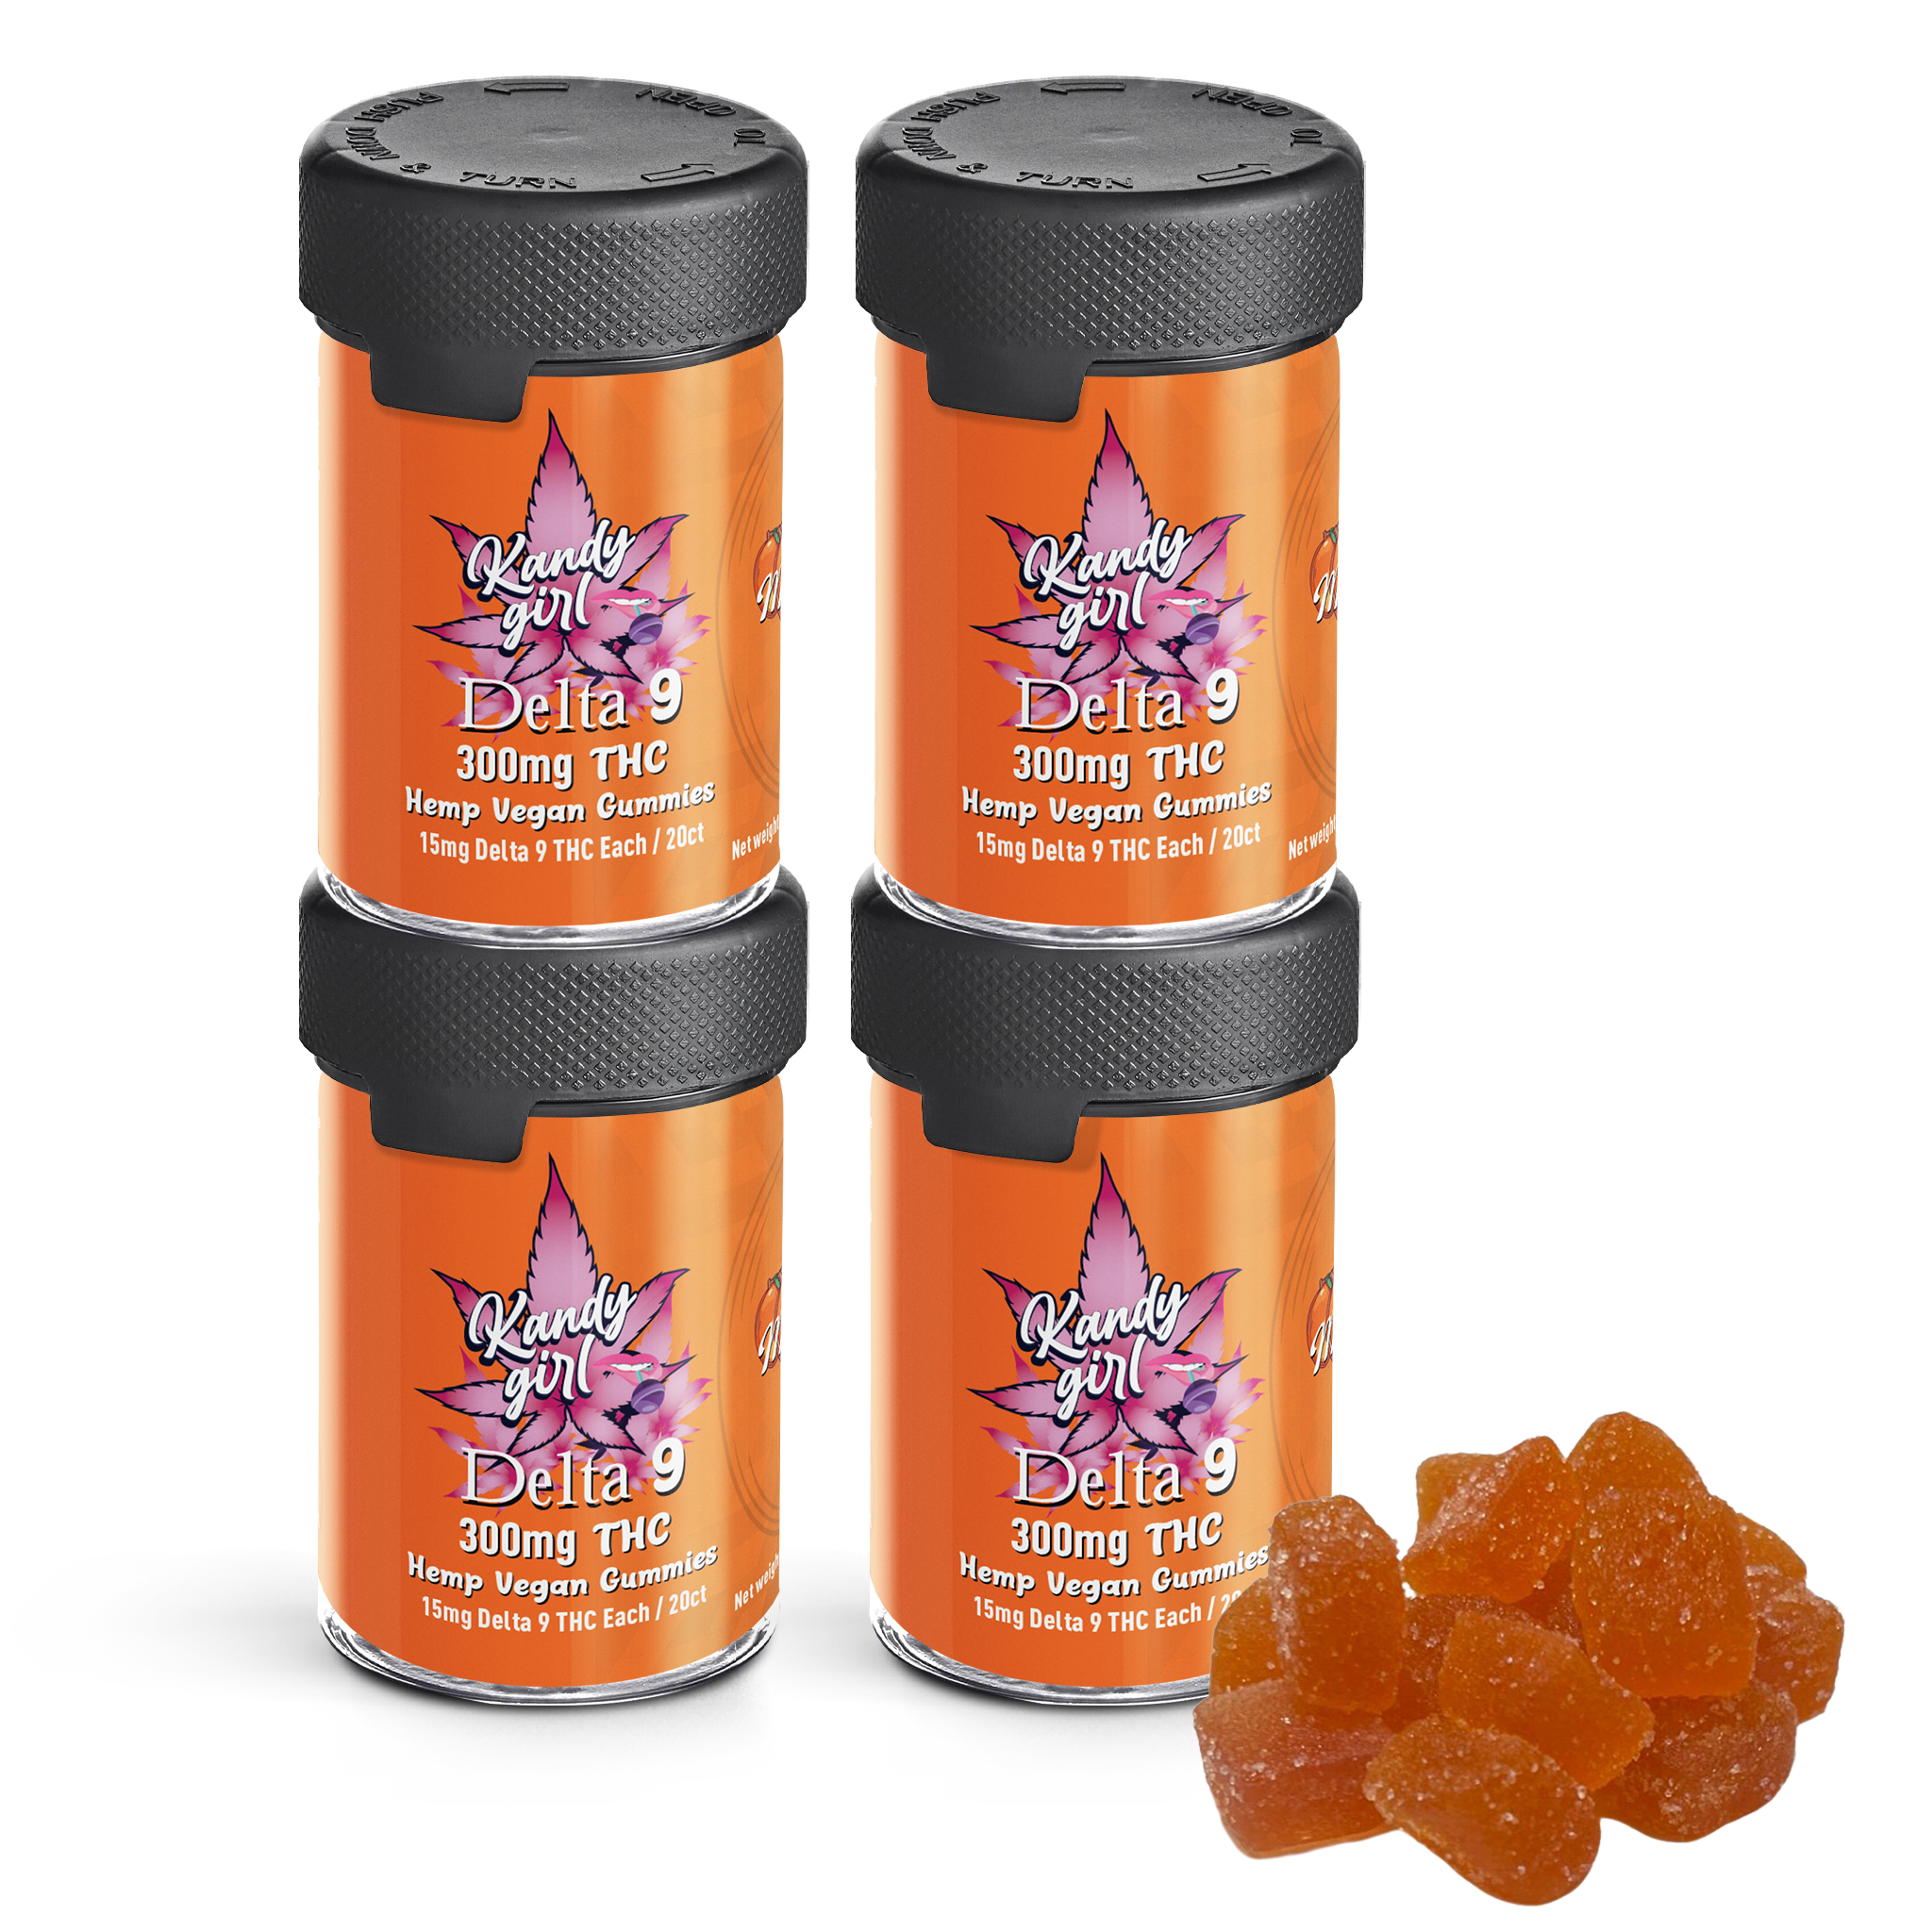 Delta 9 THC Gummies Mango - Four Bottle Bundle (1200mg THC Total)